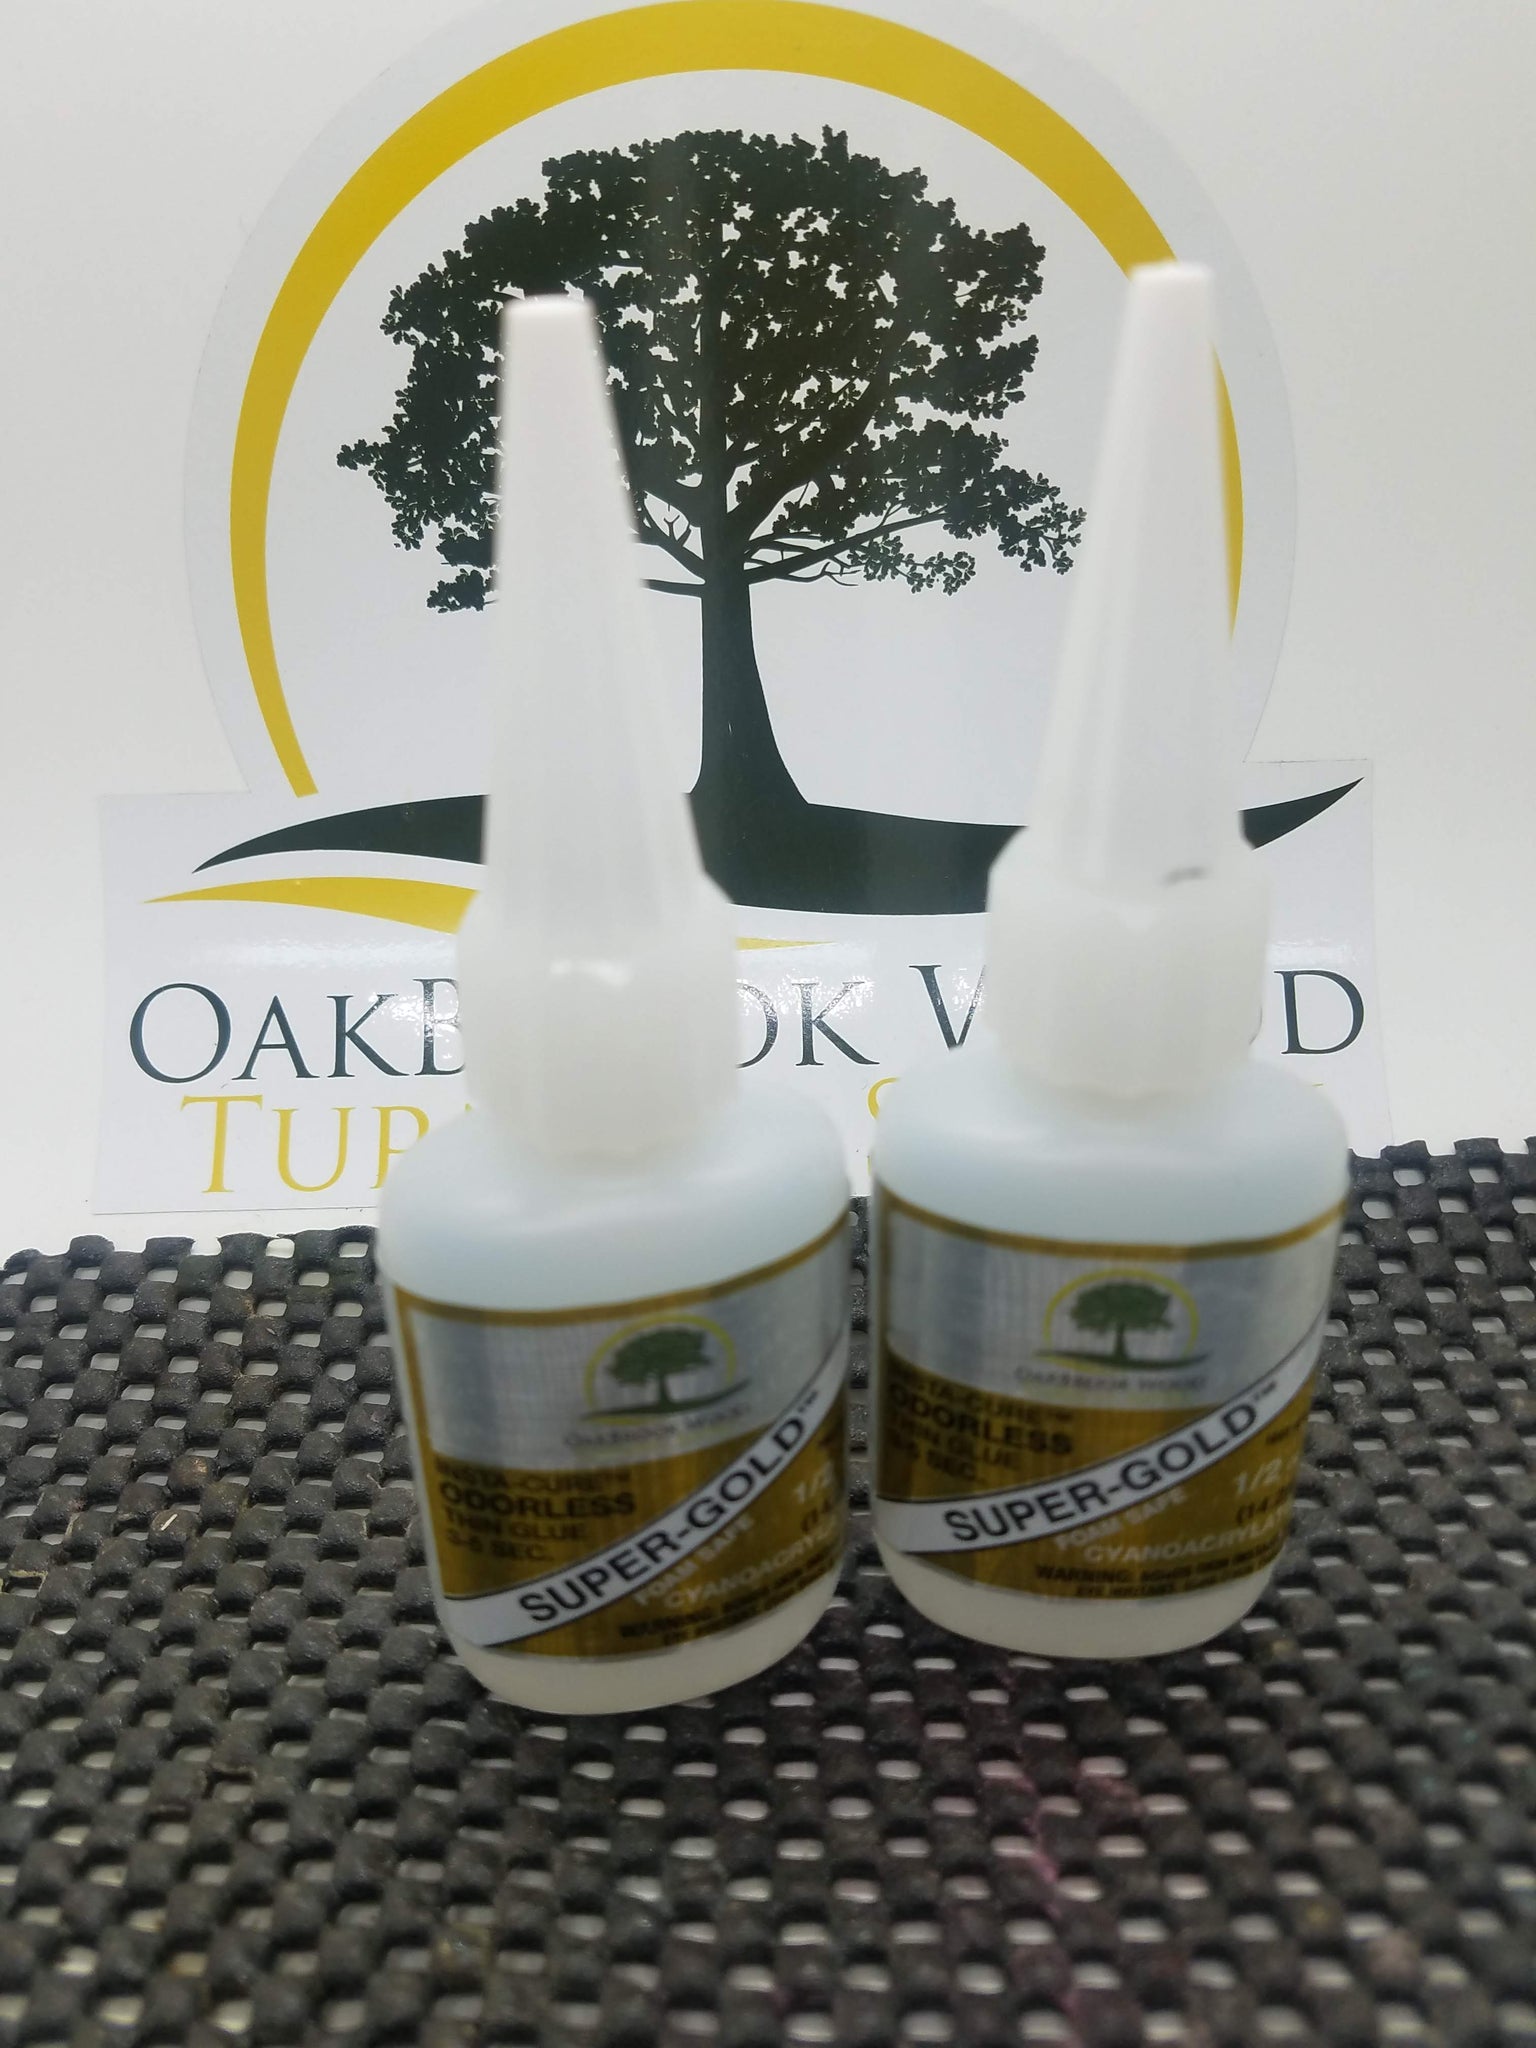 Super-Gold Thin Odorless Foam Safe CA - 1/2 oz